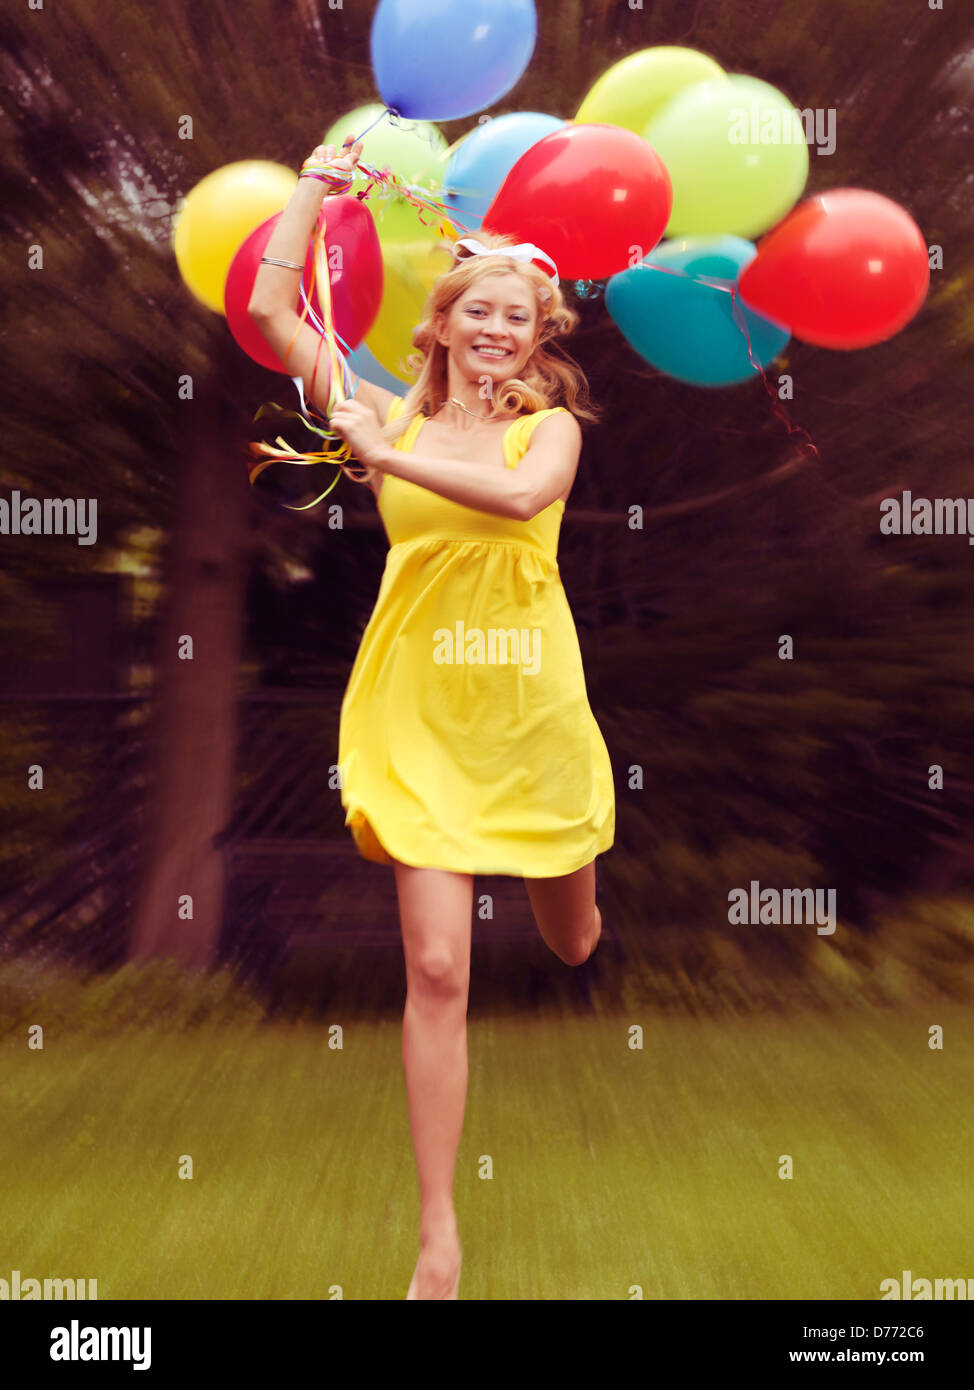 Licencia y grabados en MaximImages.com - Mujer joven feliz en el vestido de verano correr con globos de colores Foto de stock